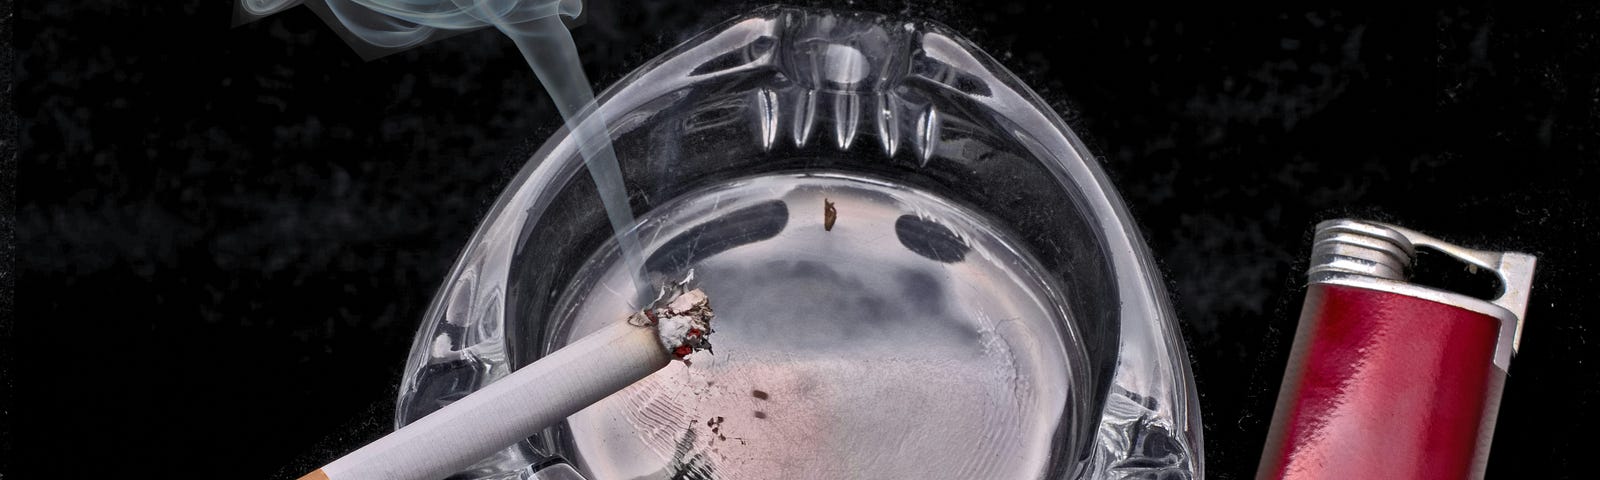 Cigarette in ashtray..